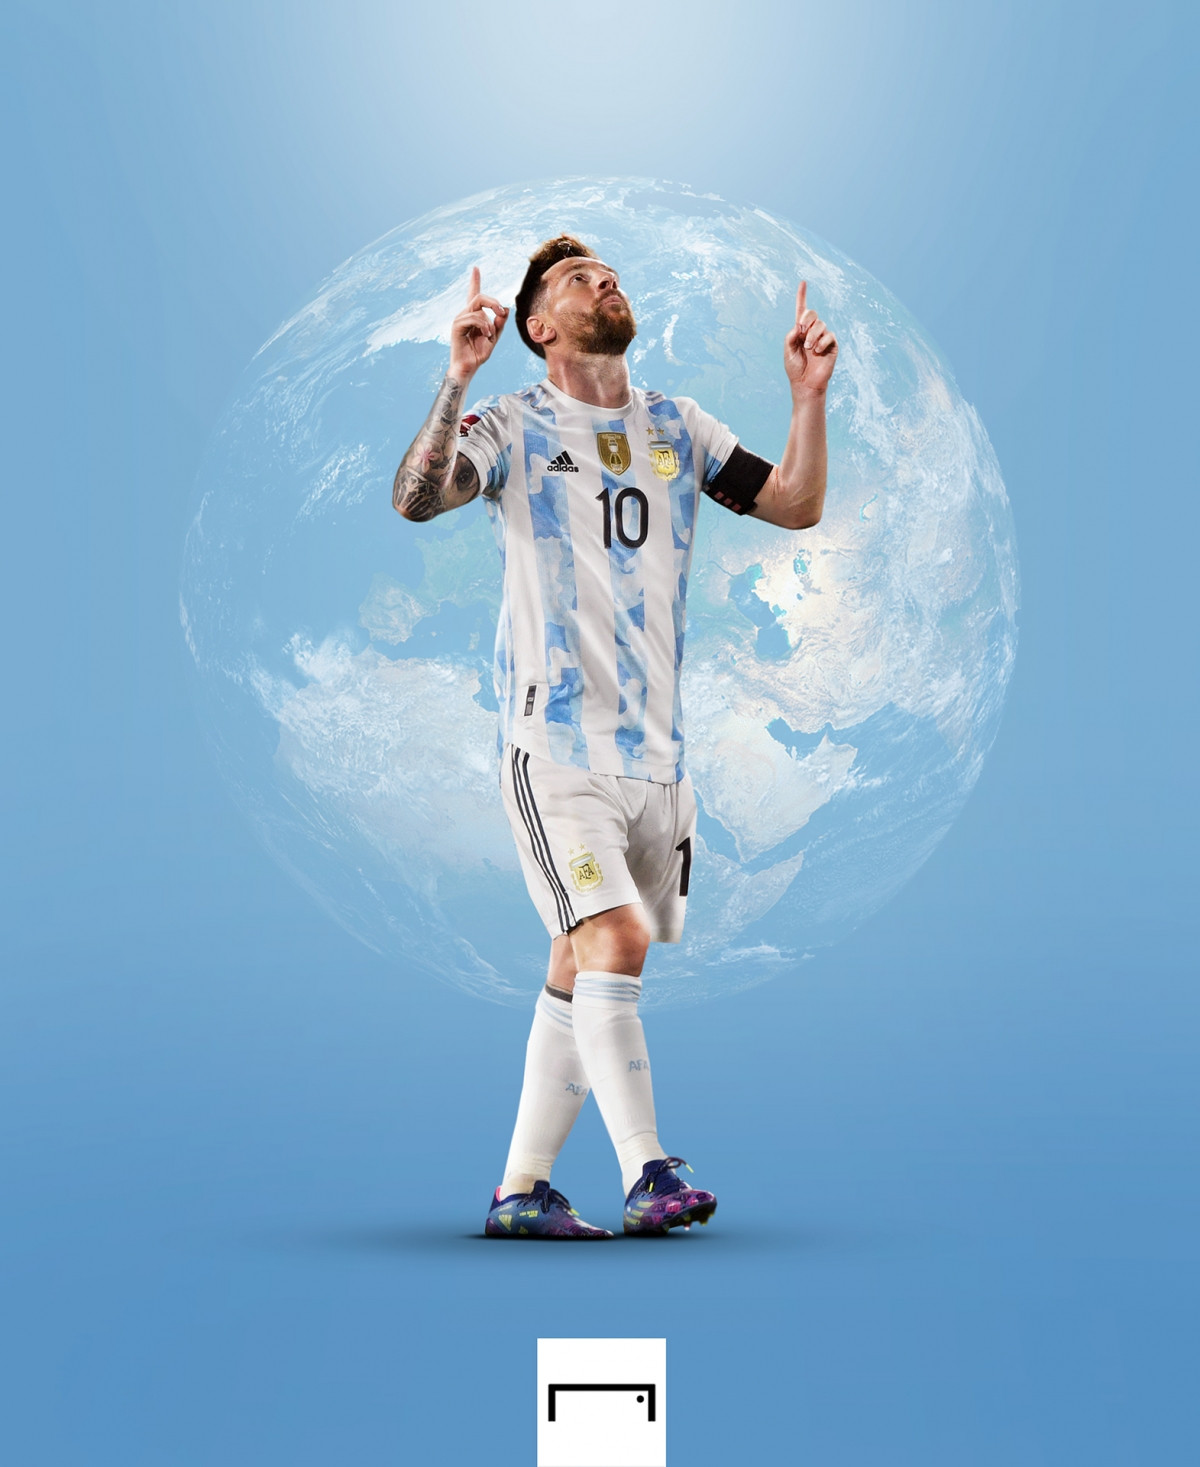 Hình ảnh biếm hoạ Messi sẽ khiến bạn cười nghiêng ngả. Hãy xem thử để khám phá sự hài hước và sáng tạo đến từ những người hâm mộ đích thực của Messi.